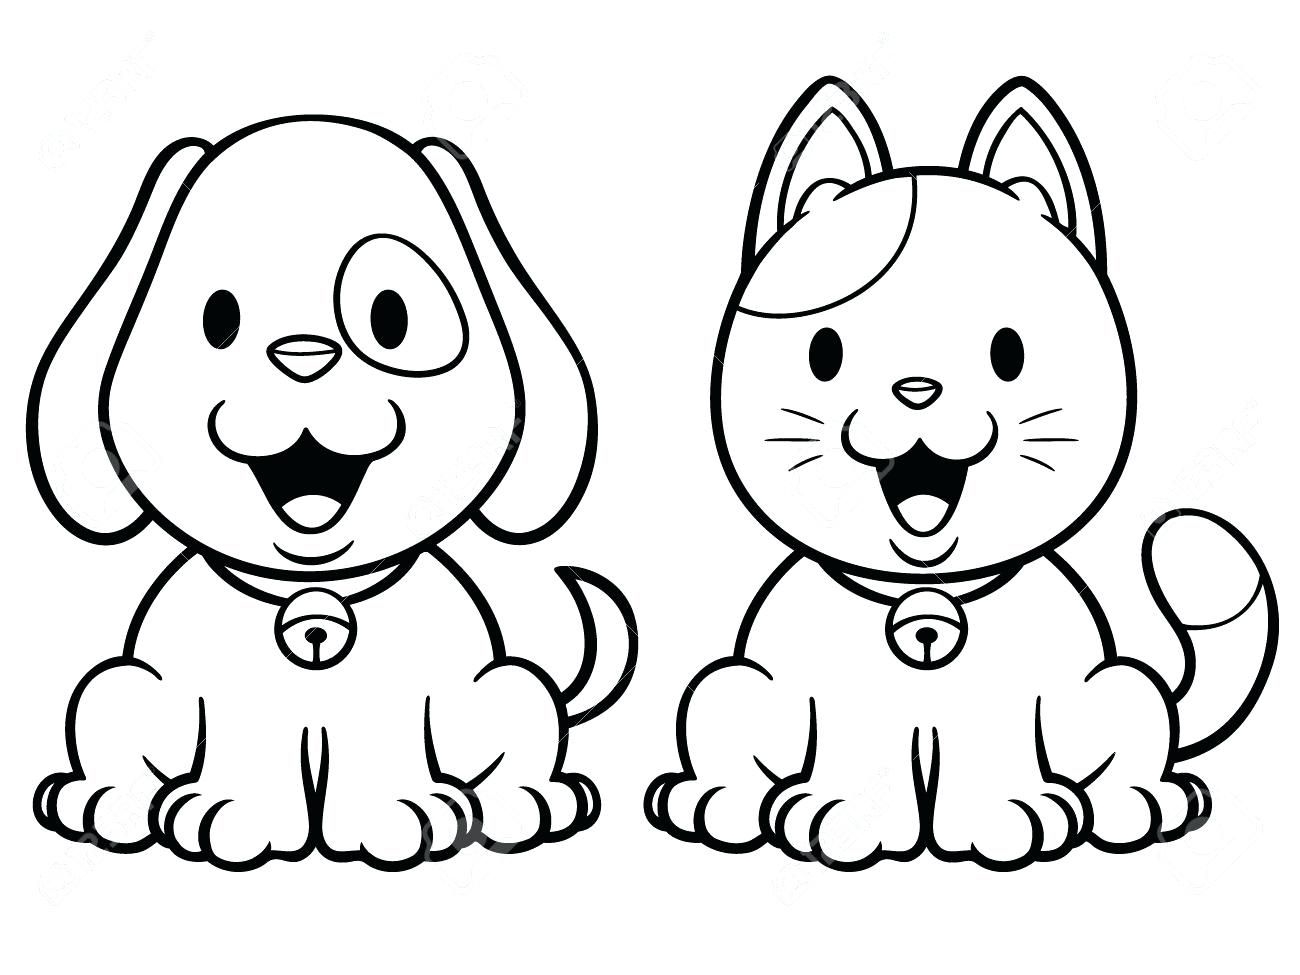 Юмористические раскраски кошки и собаки для детей